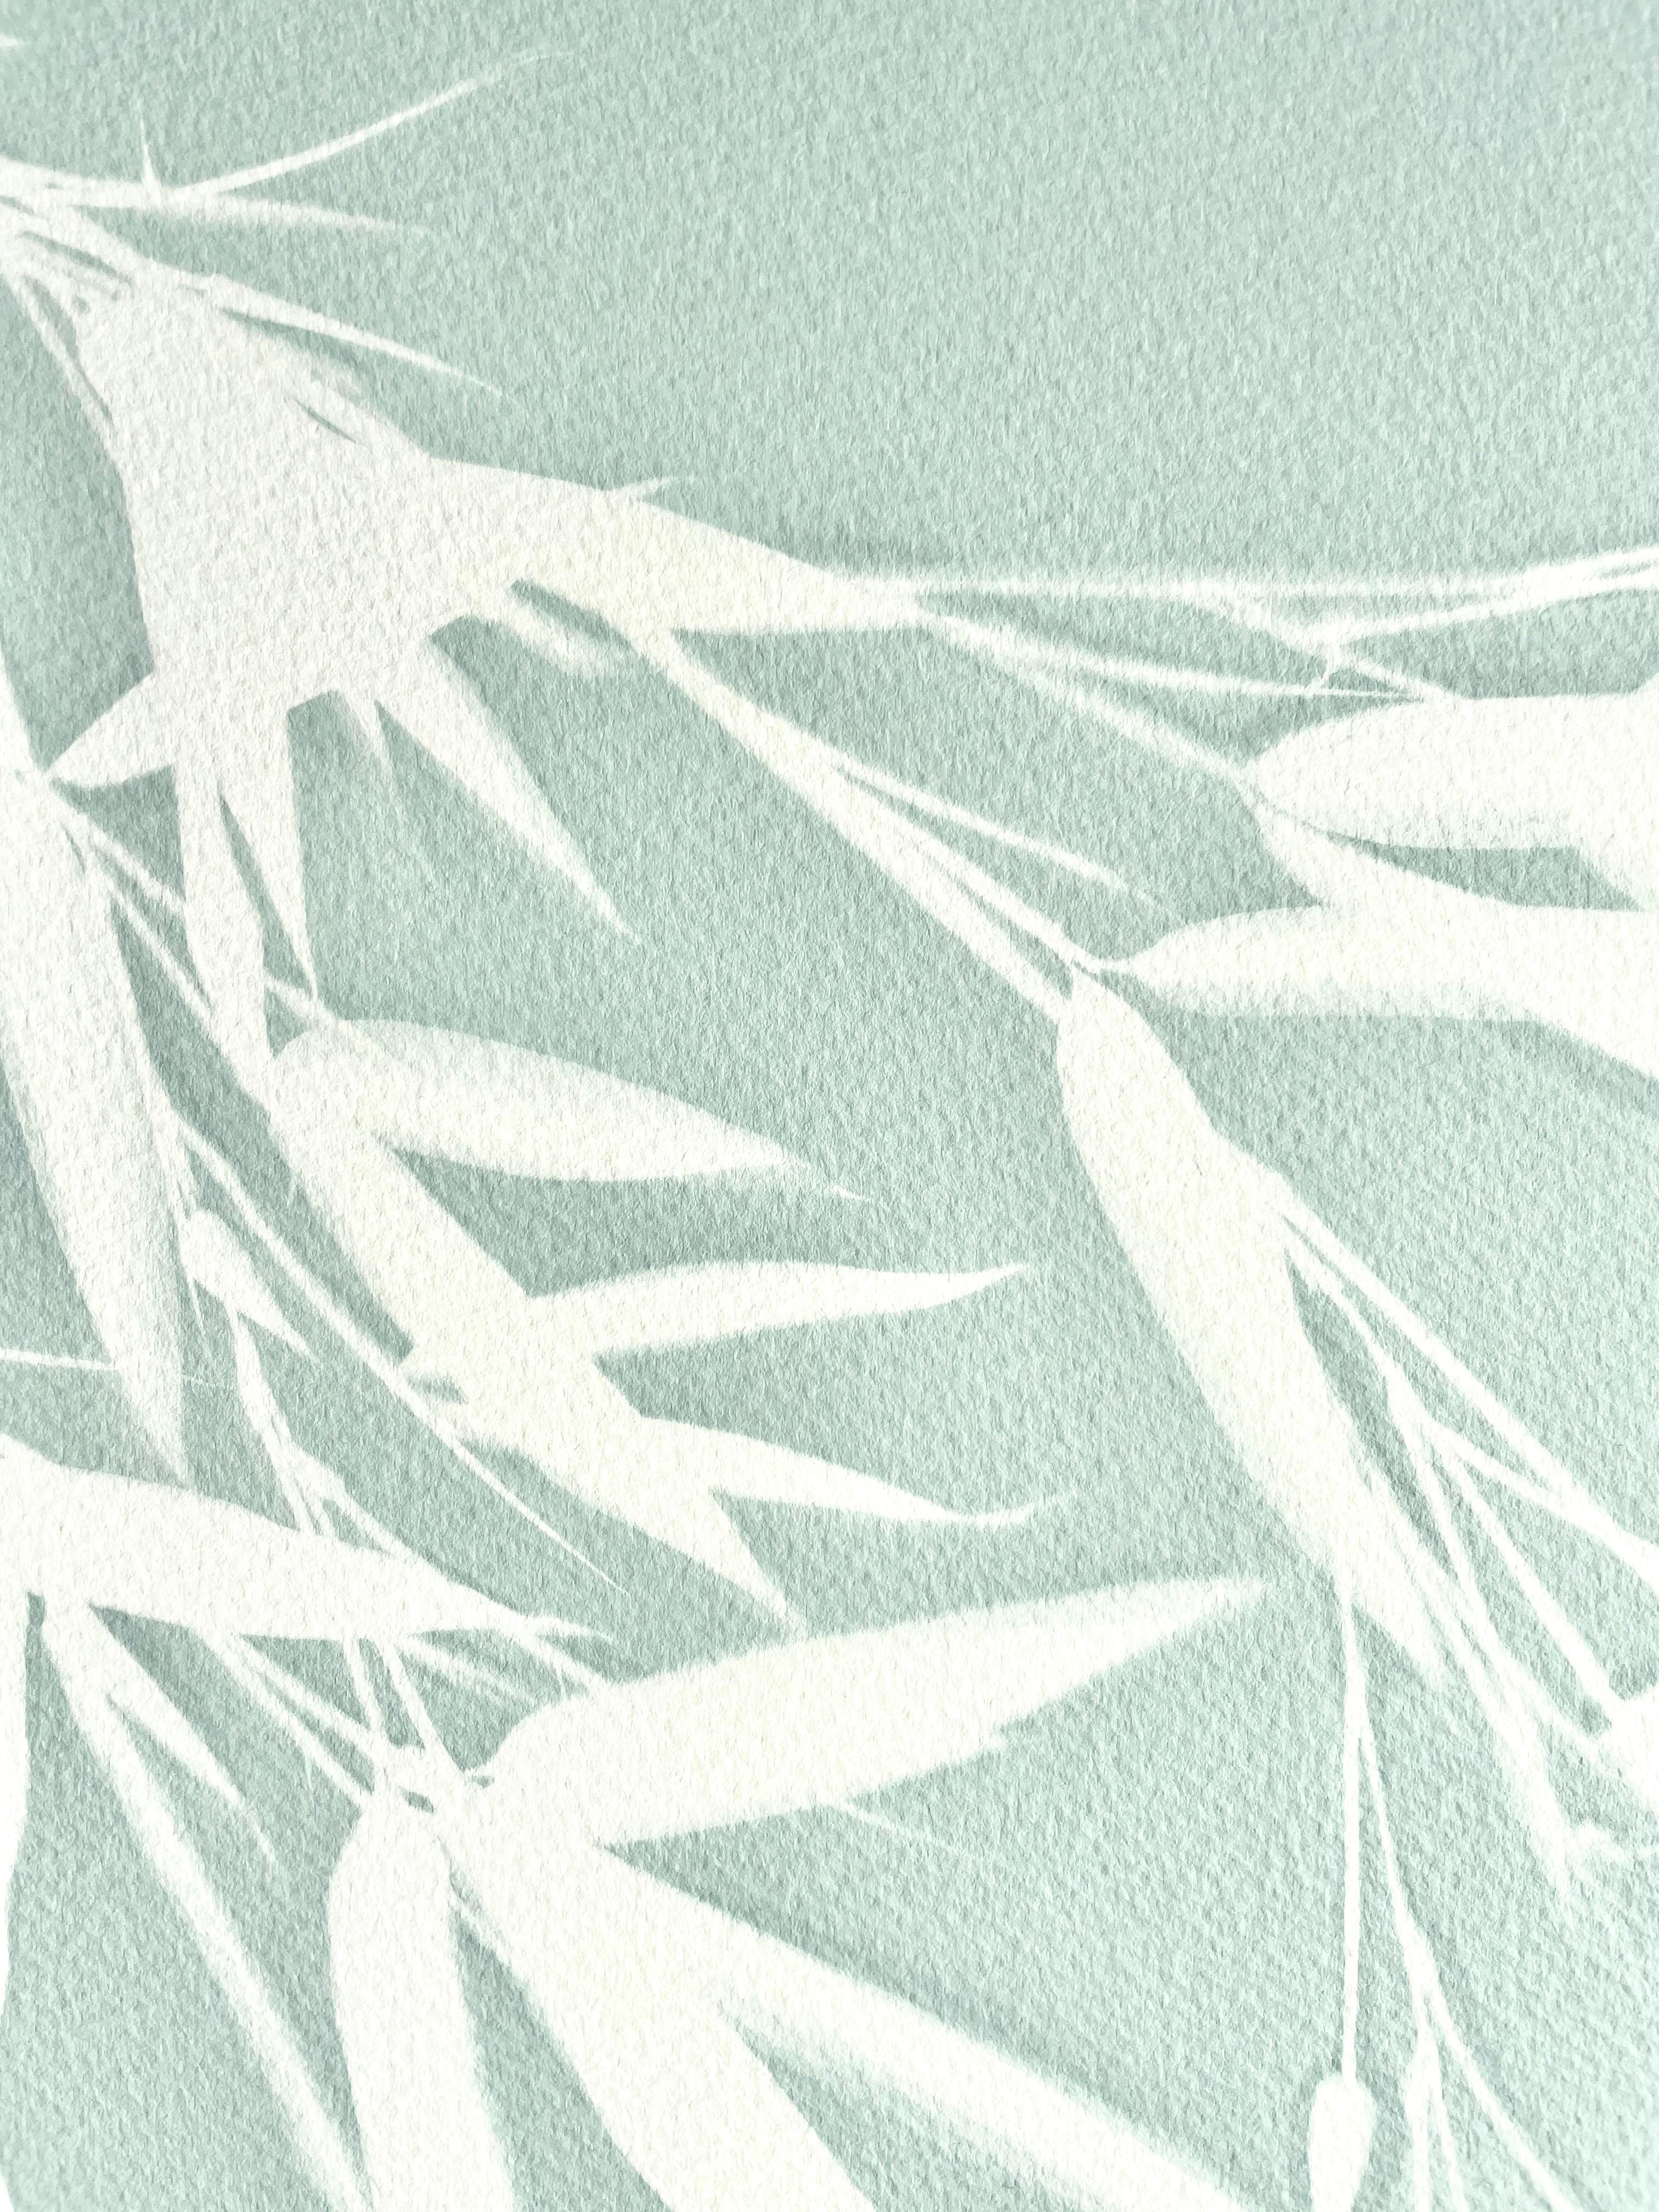 Celadon Bambus (handgedruckte botanische Cyanotypie, 24 x 18 Zoll) (Zeitgenössisch), Photograph, von Christine So